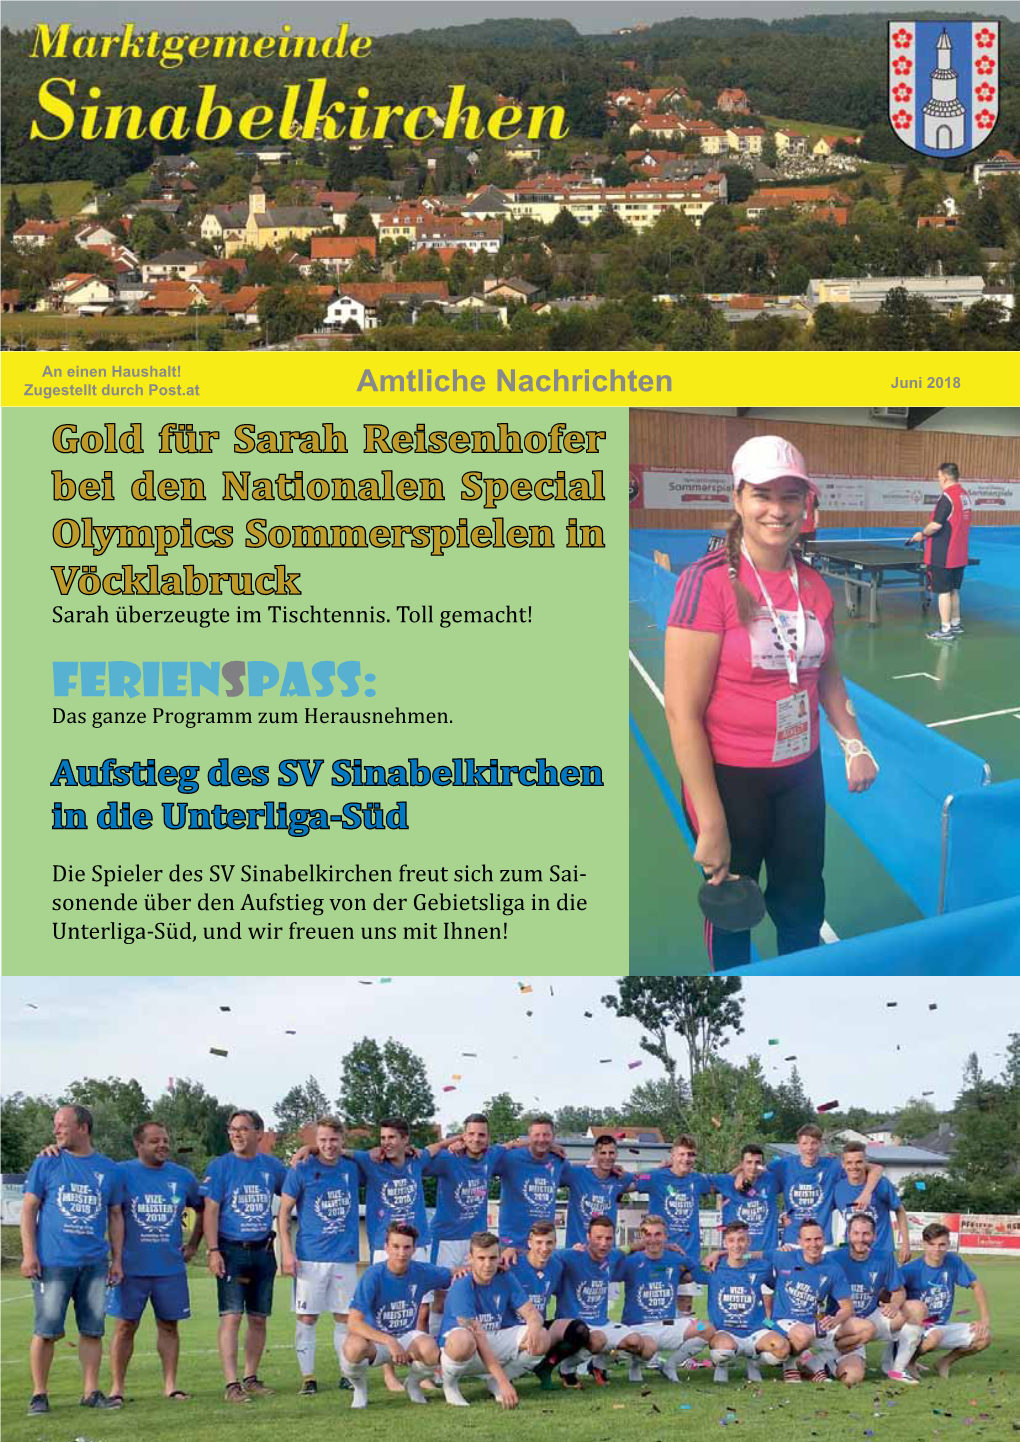 Gold Für Sarah Reisenhofer Bei Den Nationalen Special Olympics Sommerspielen in Vöcklabruck Sarah Überzeugte Im Tischtennis